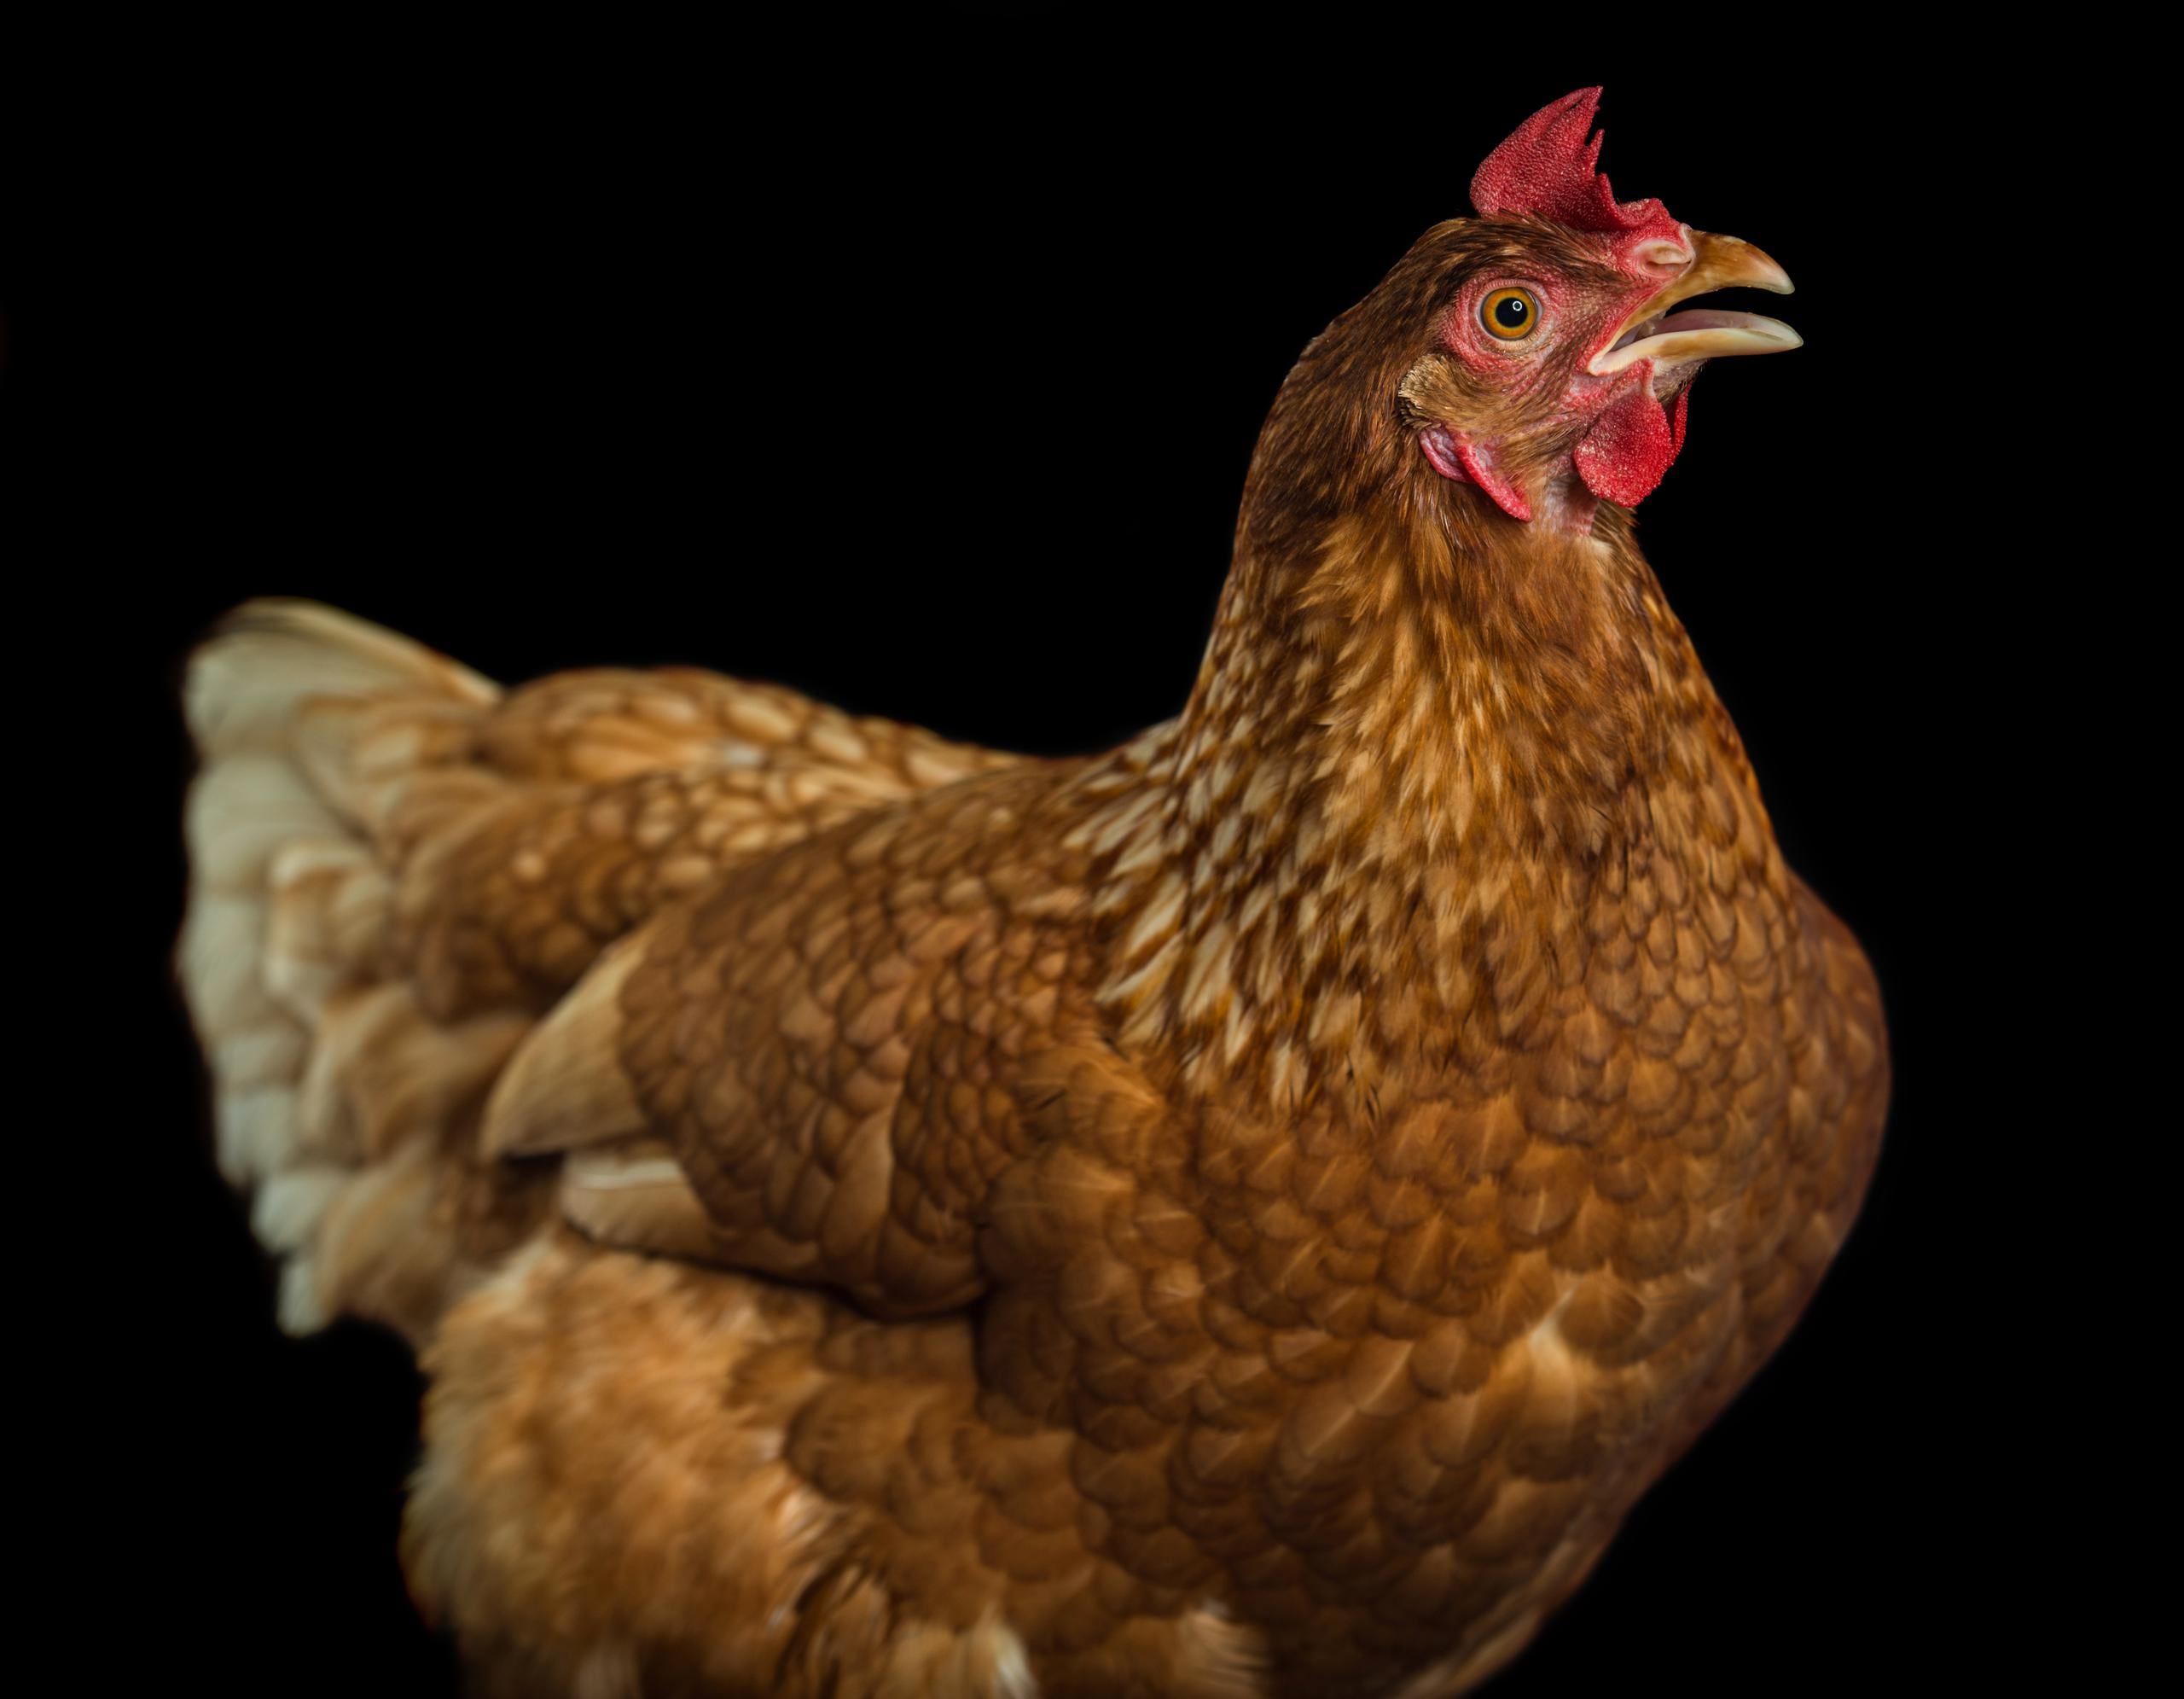 Una portavoz de la agencia federal expresó que no podía revelar de dónde apareció la gallina por "razones de seguridad".